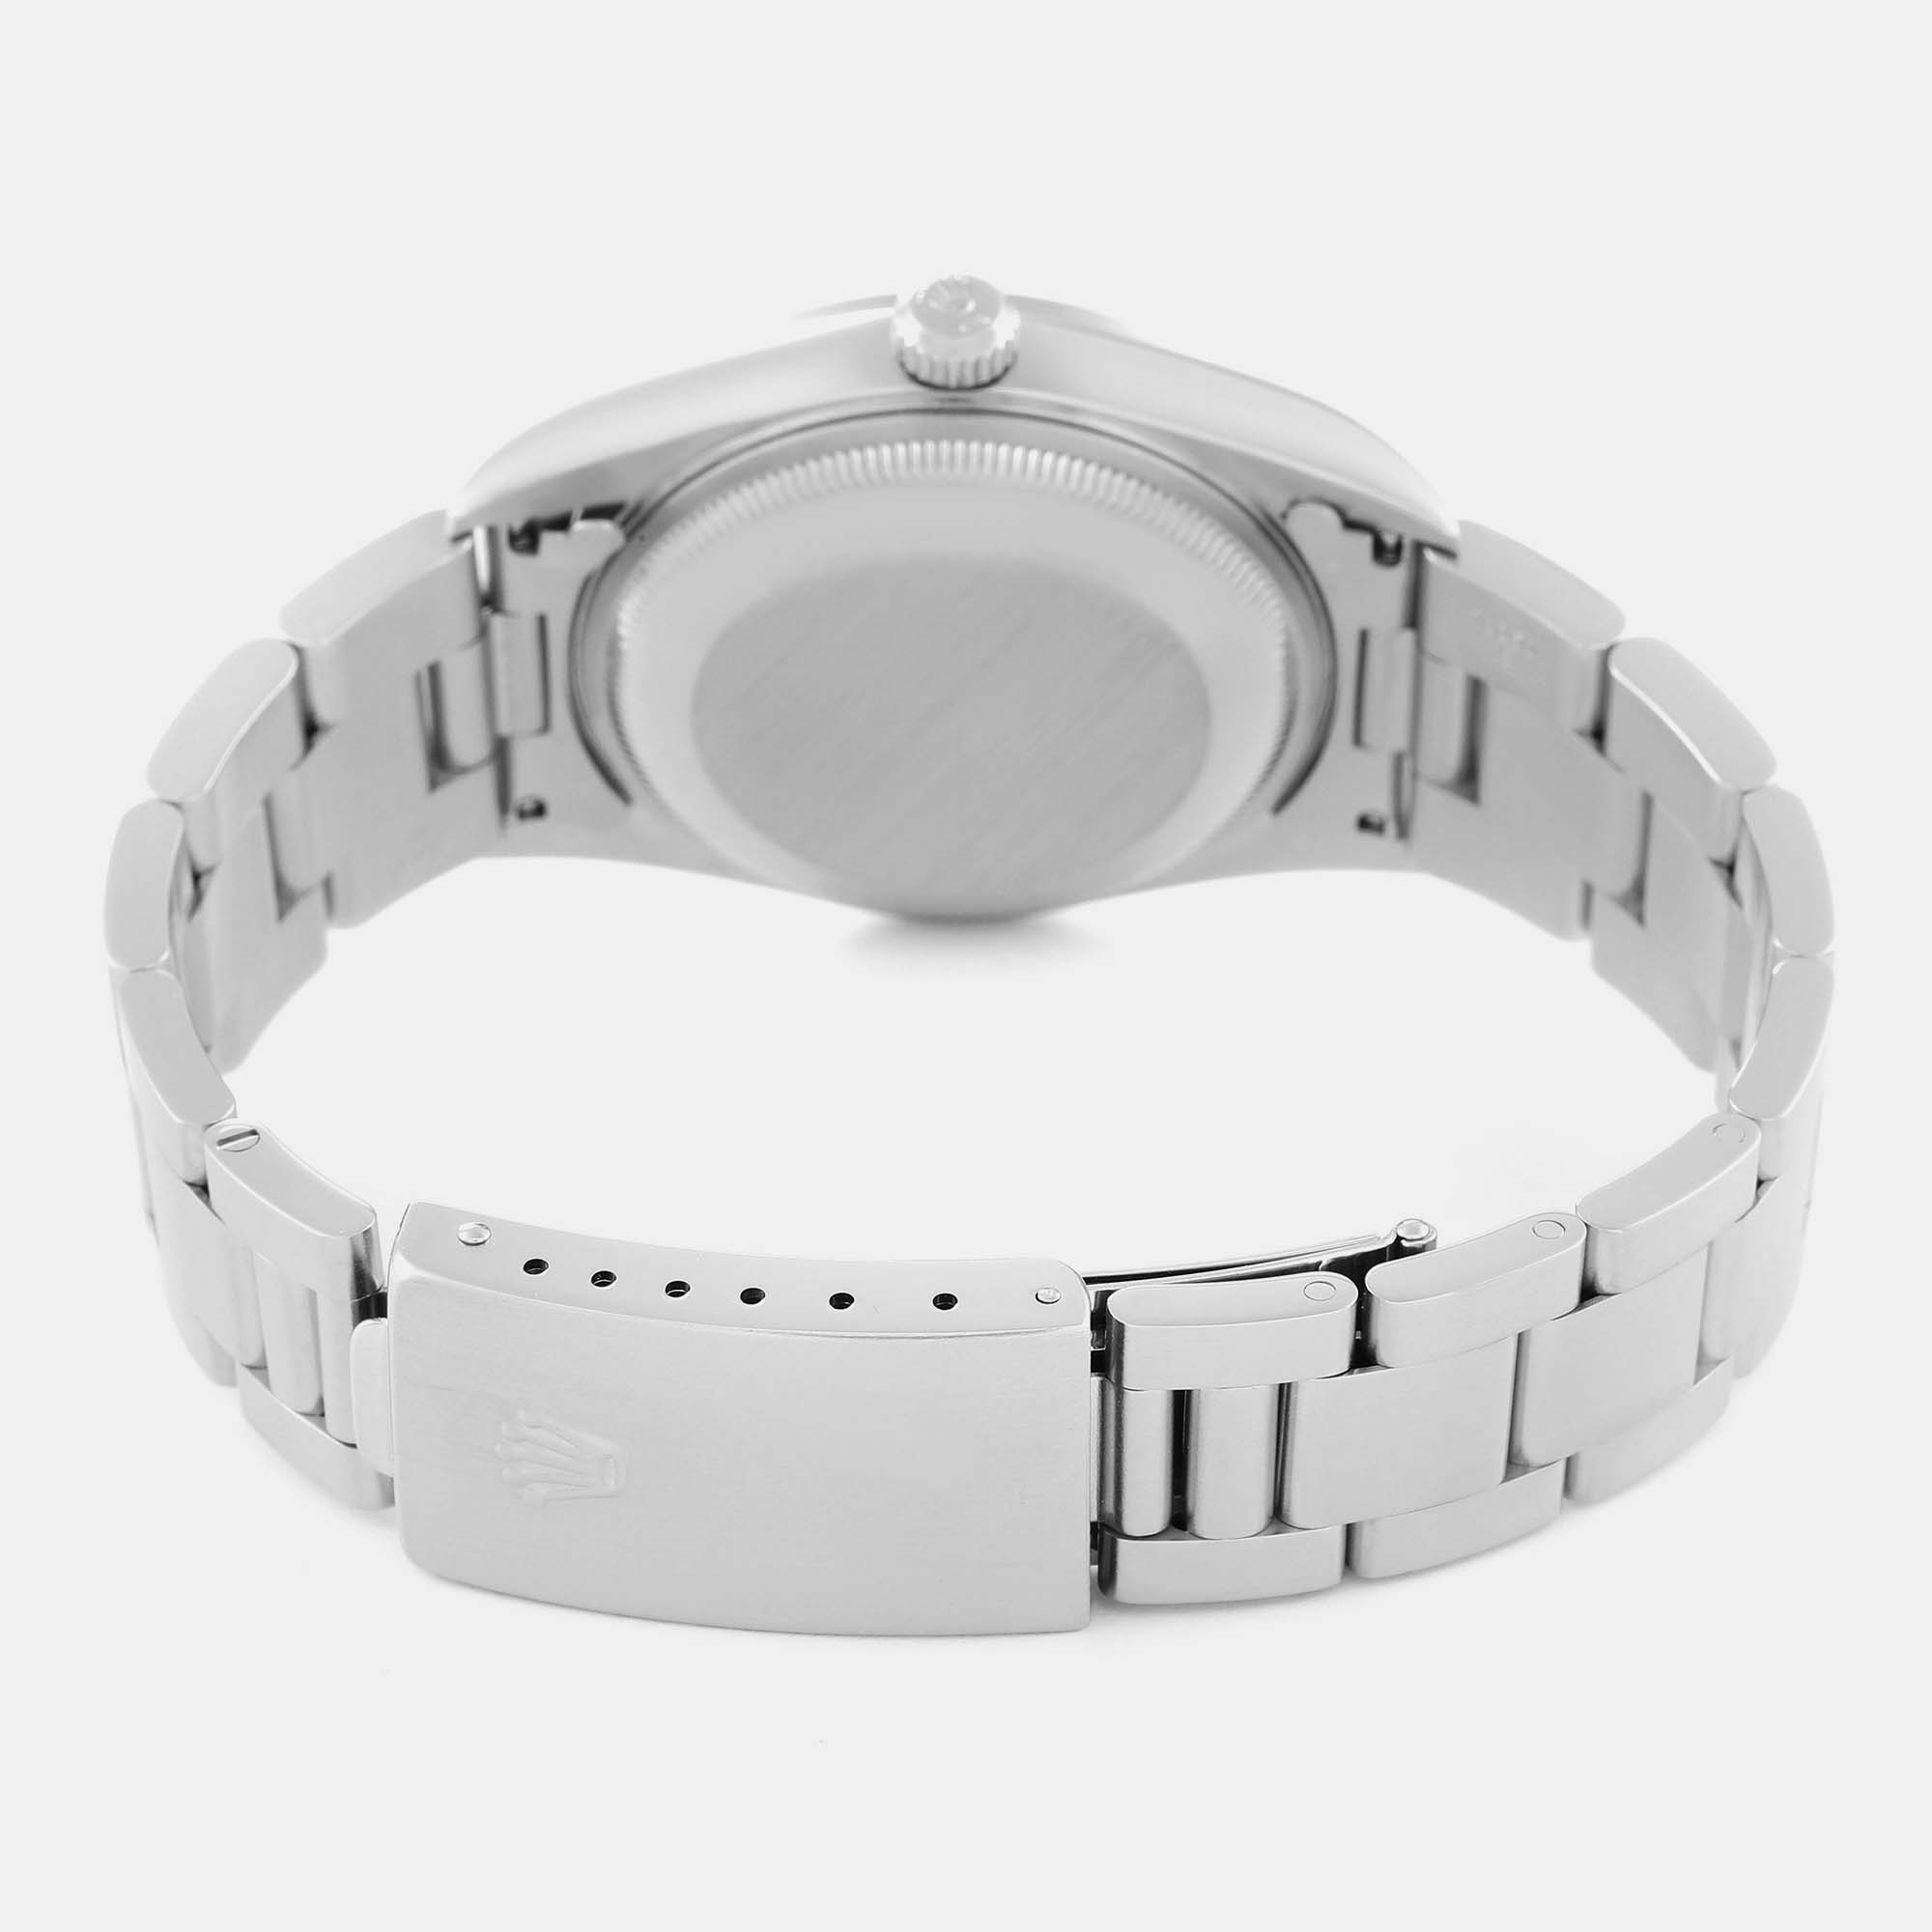 Rolex Date Blue Dial Oyster Bracelet Steel Men's Watch 15200 34 Mm